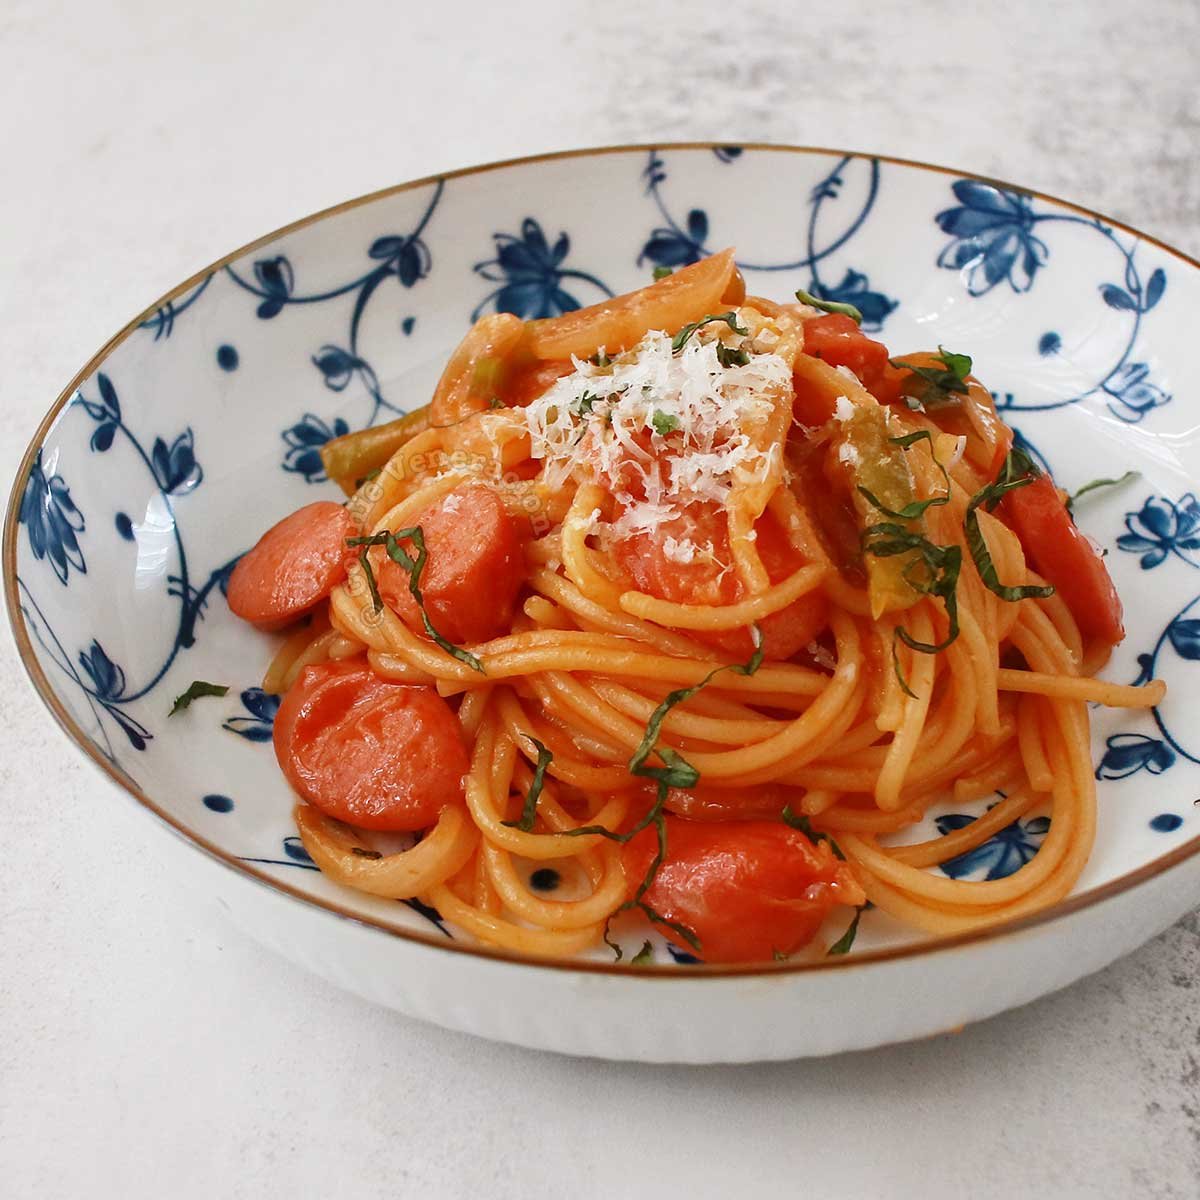 Спагетти с кетчупом. Кетчуп Помодоро. Томатный соус для спагетти с дедушкой. Спагетти творог и кетчуп. Спагетти с перцем